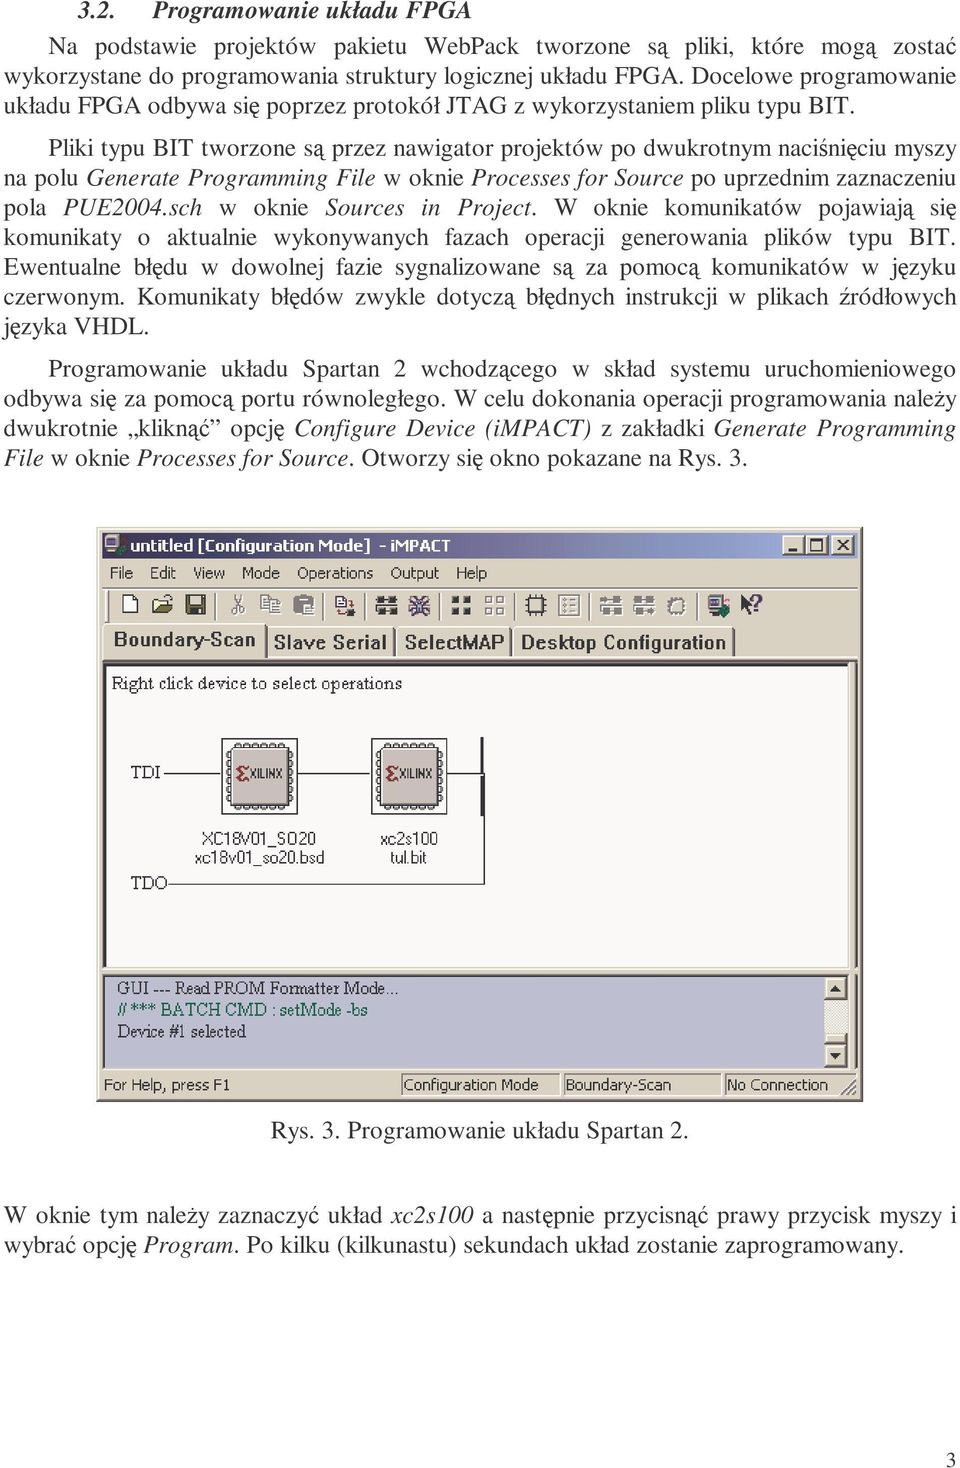 Pliki typu BIT tworzone są przez nawigator projektów po dwukrotnym naciśnięciu myszy na polu Generate Programming File w oknie Processes for Source po uprzednim zaznaczeniu pola PUE2004.